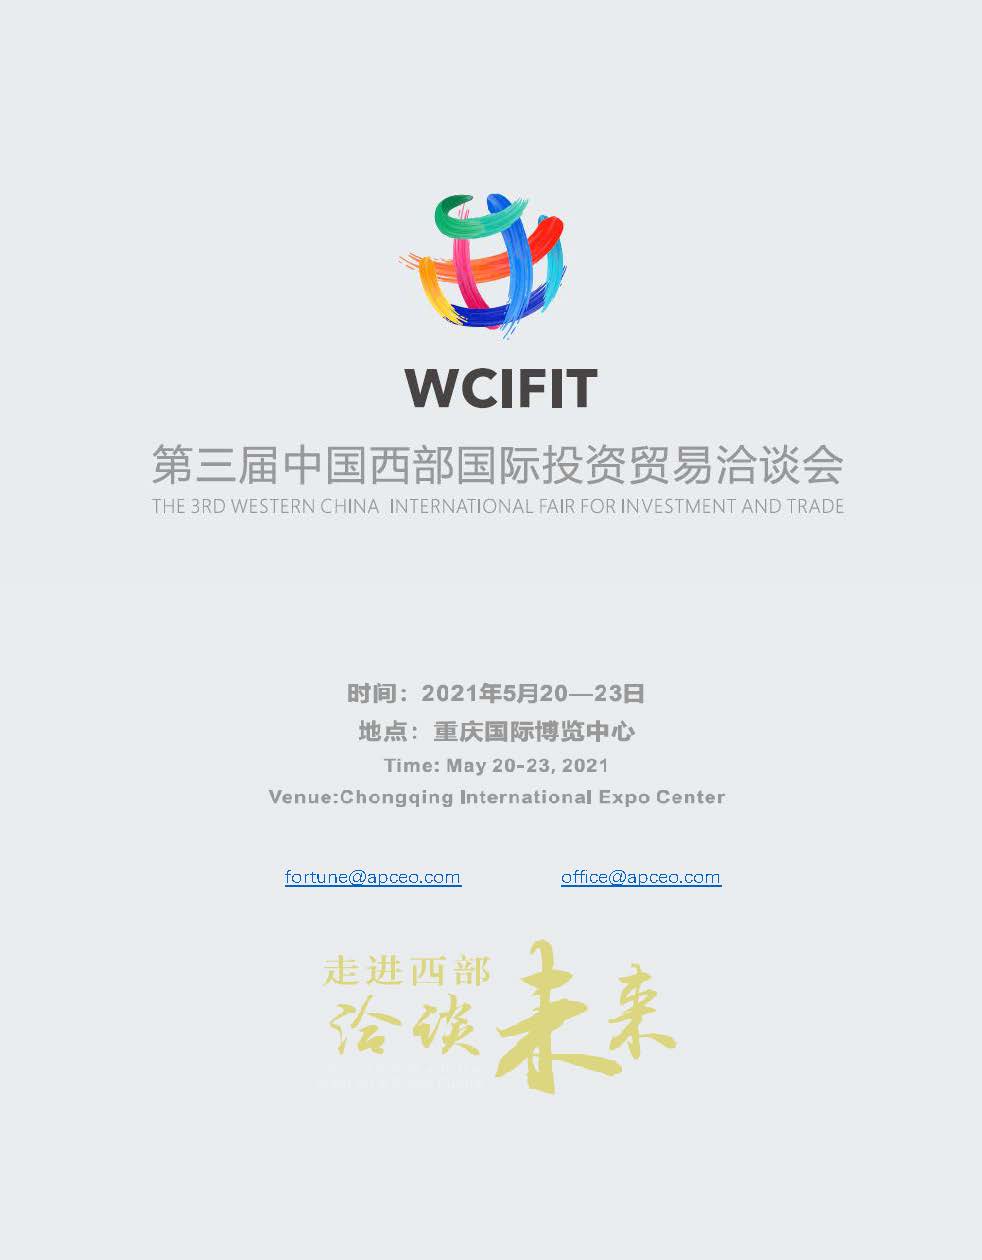 Profile-(WCIFTI)-2021_1.jpg